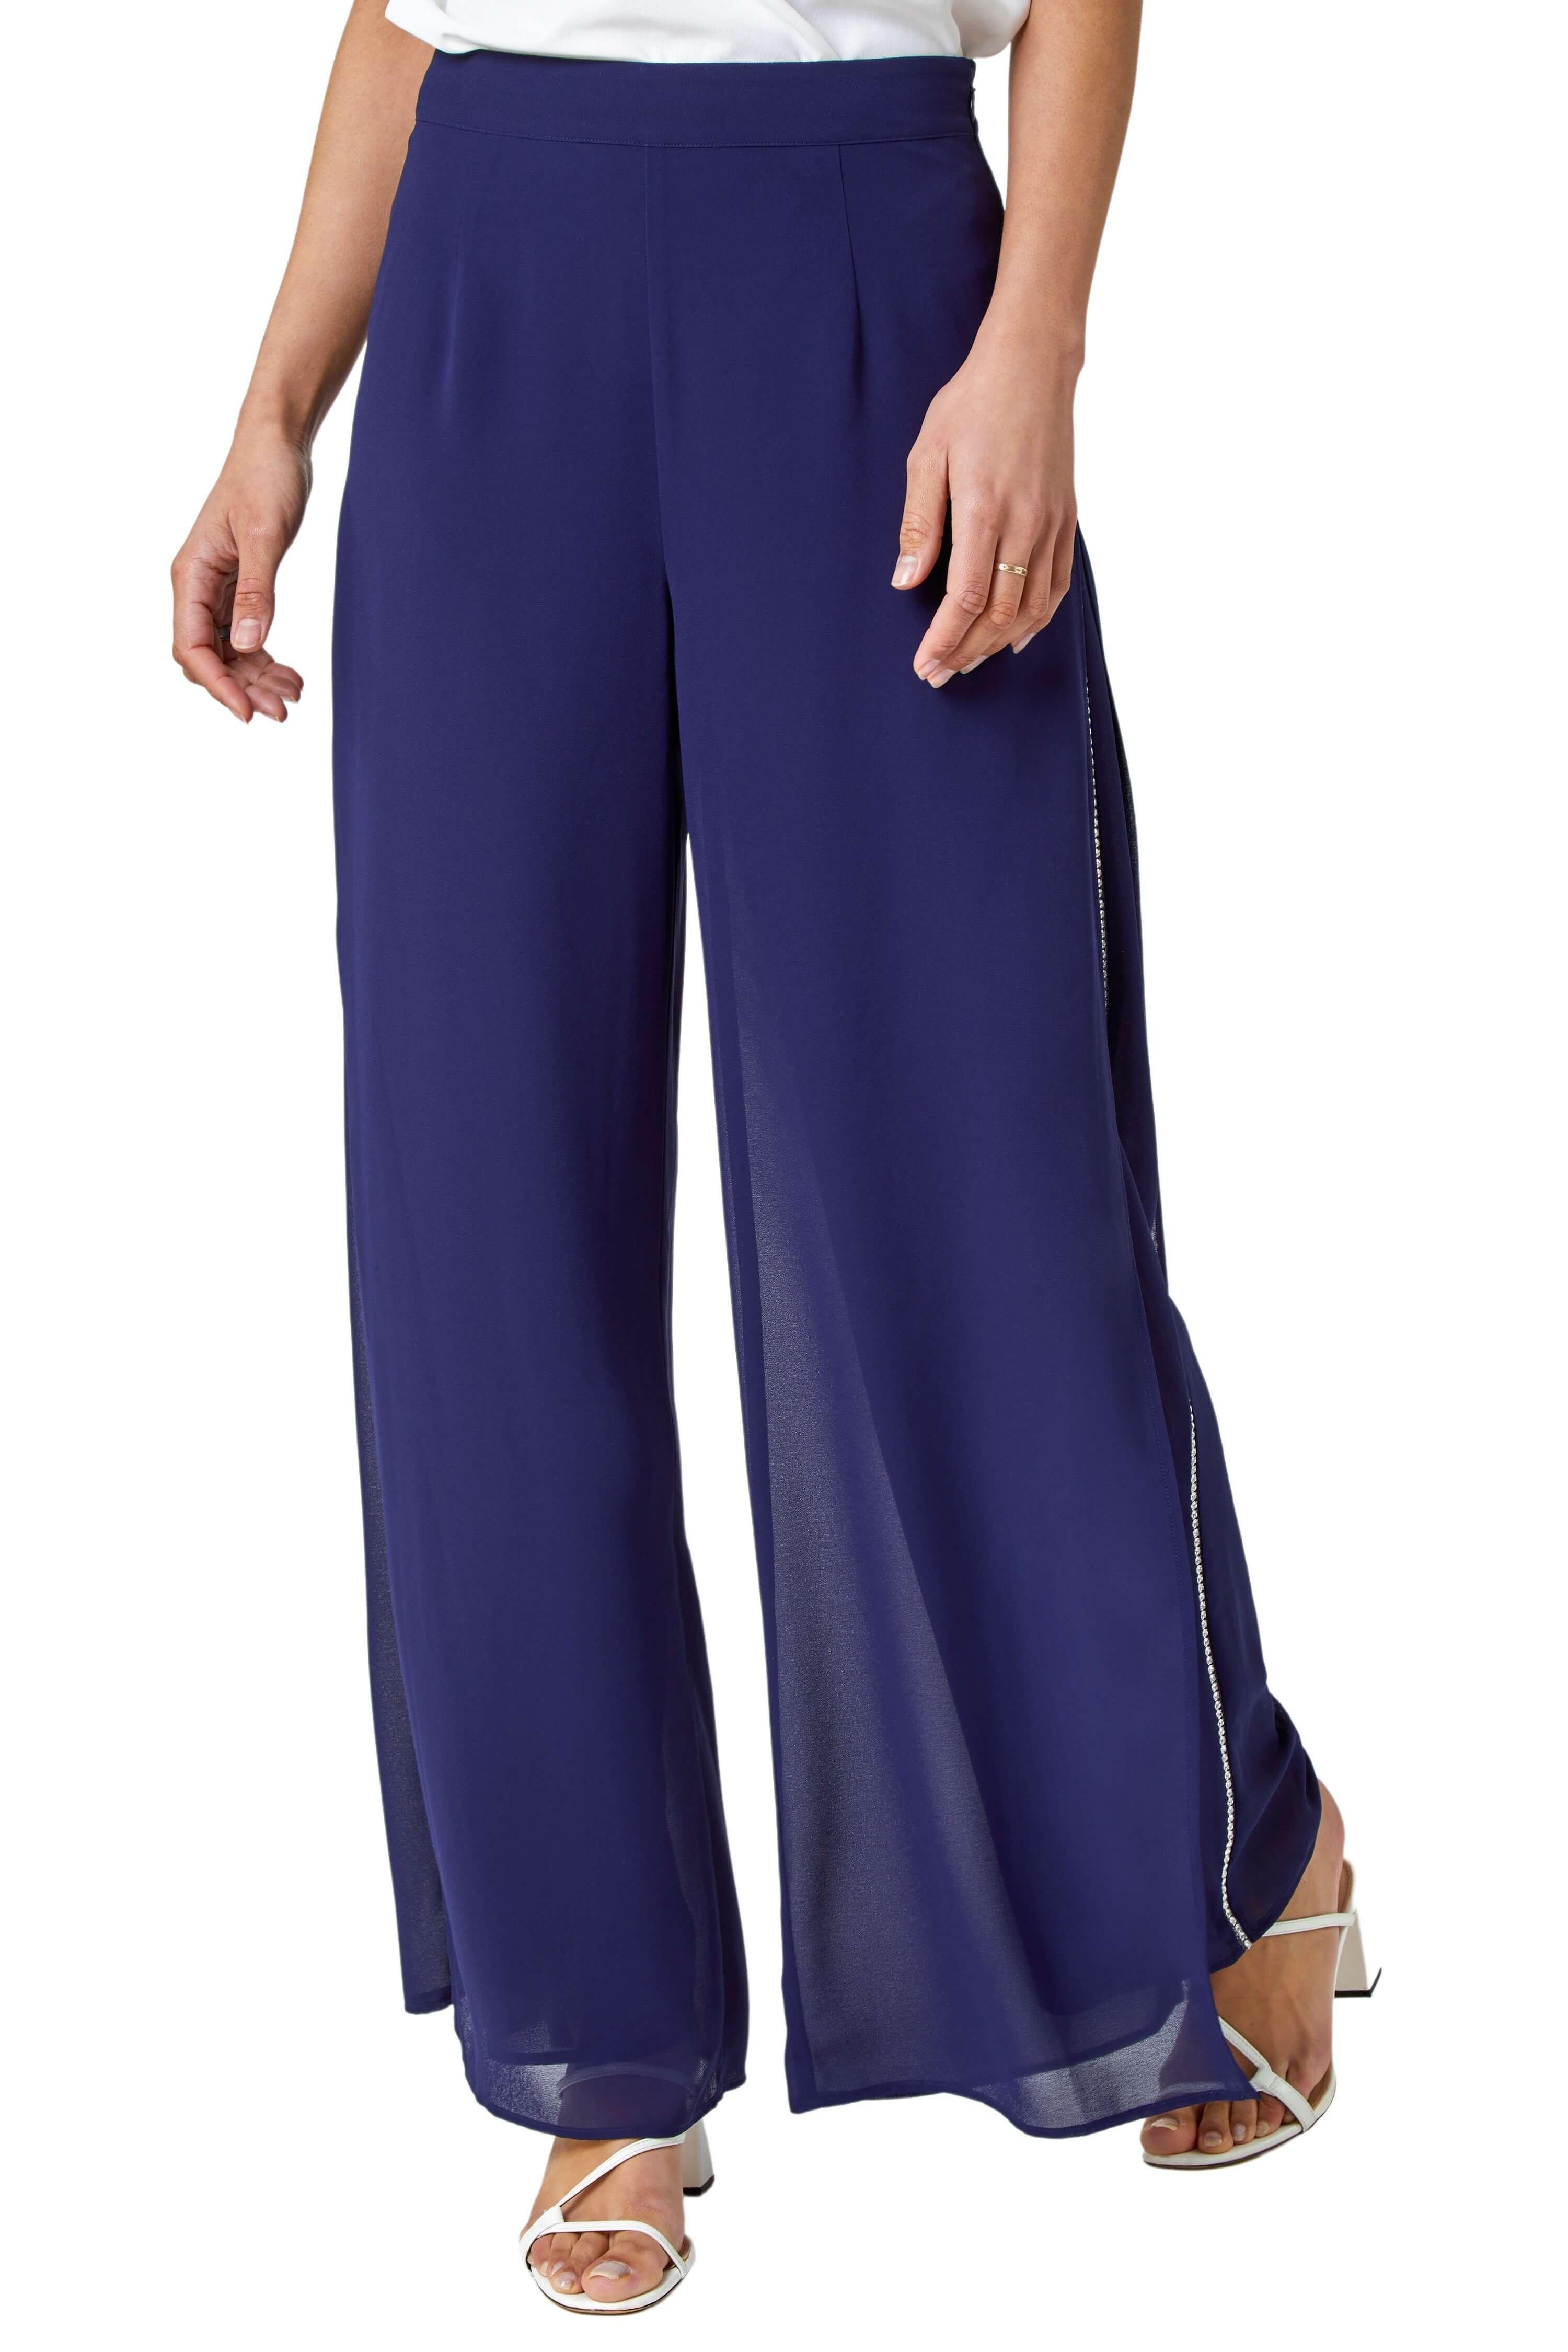 Шифоновые брюки Diamante с боковым разрезом Roman, синий офисные женские кружевные брюки летние корейские женские шифоновые широкие брюки с высокой талией кружевные брюки с разрезом повседневн